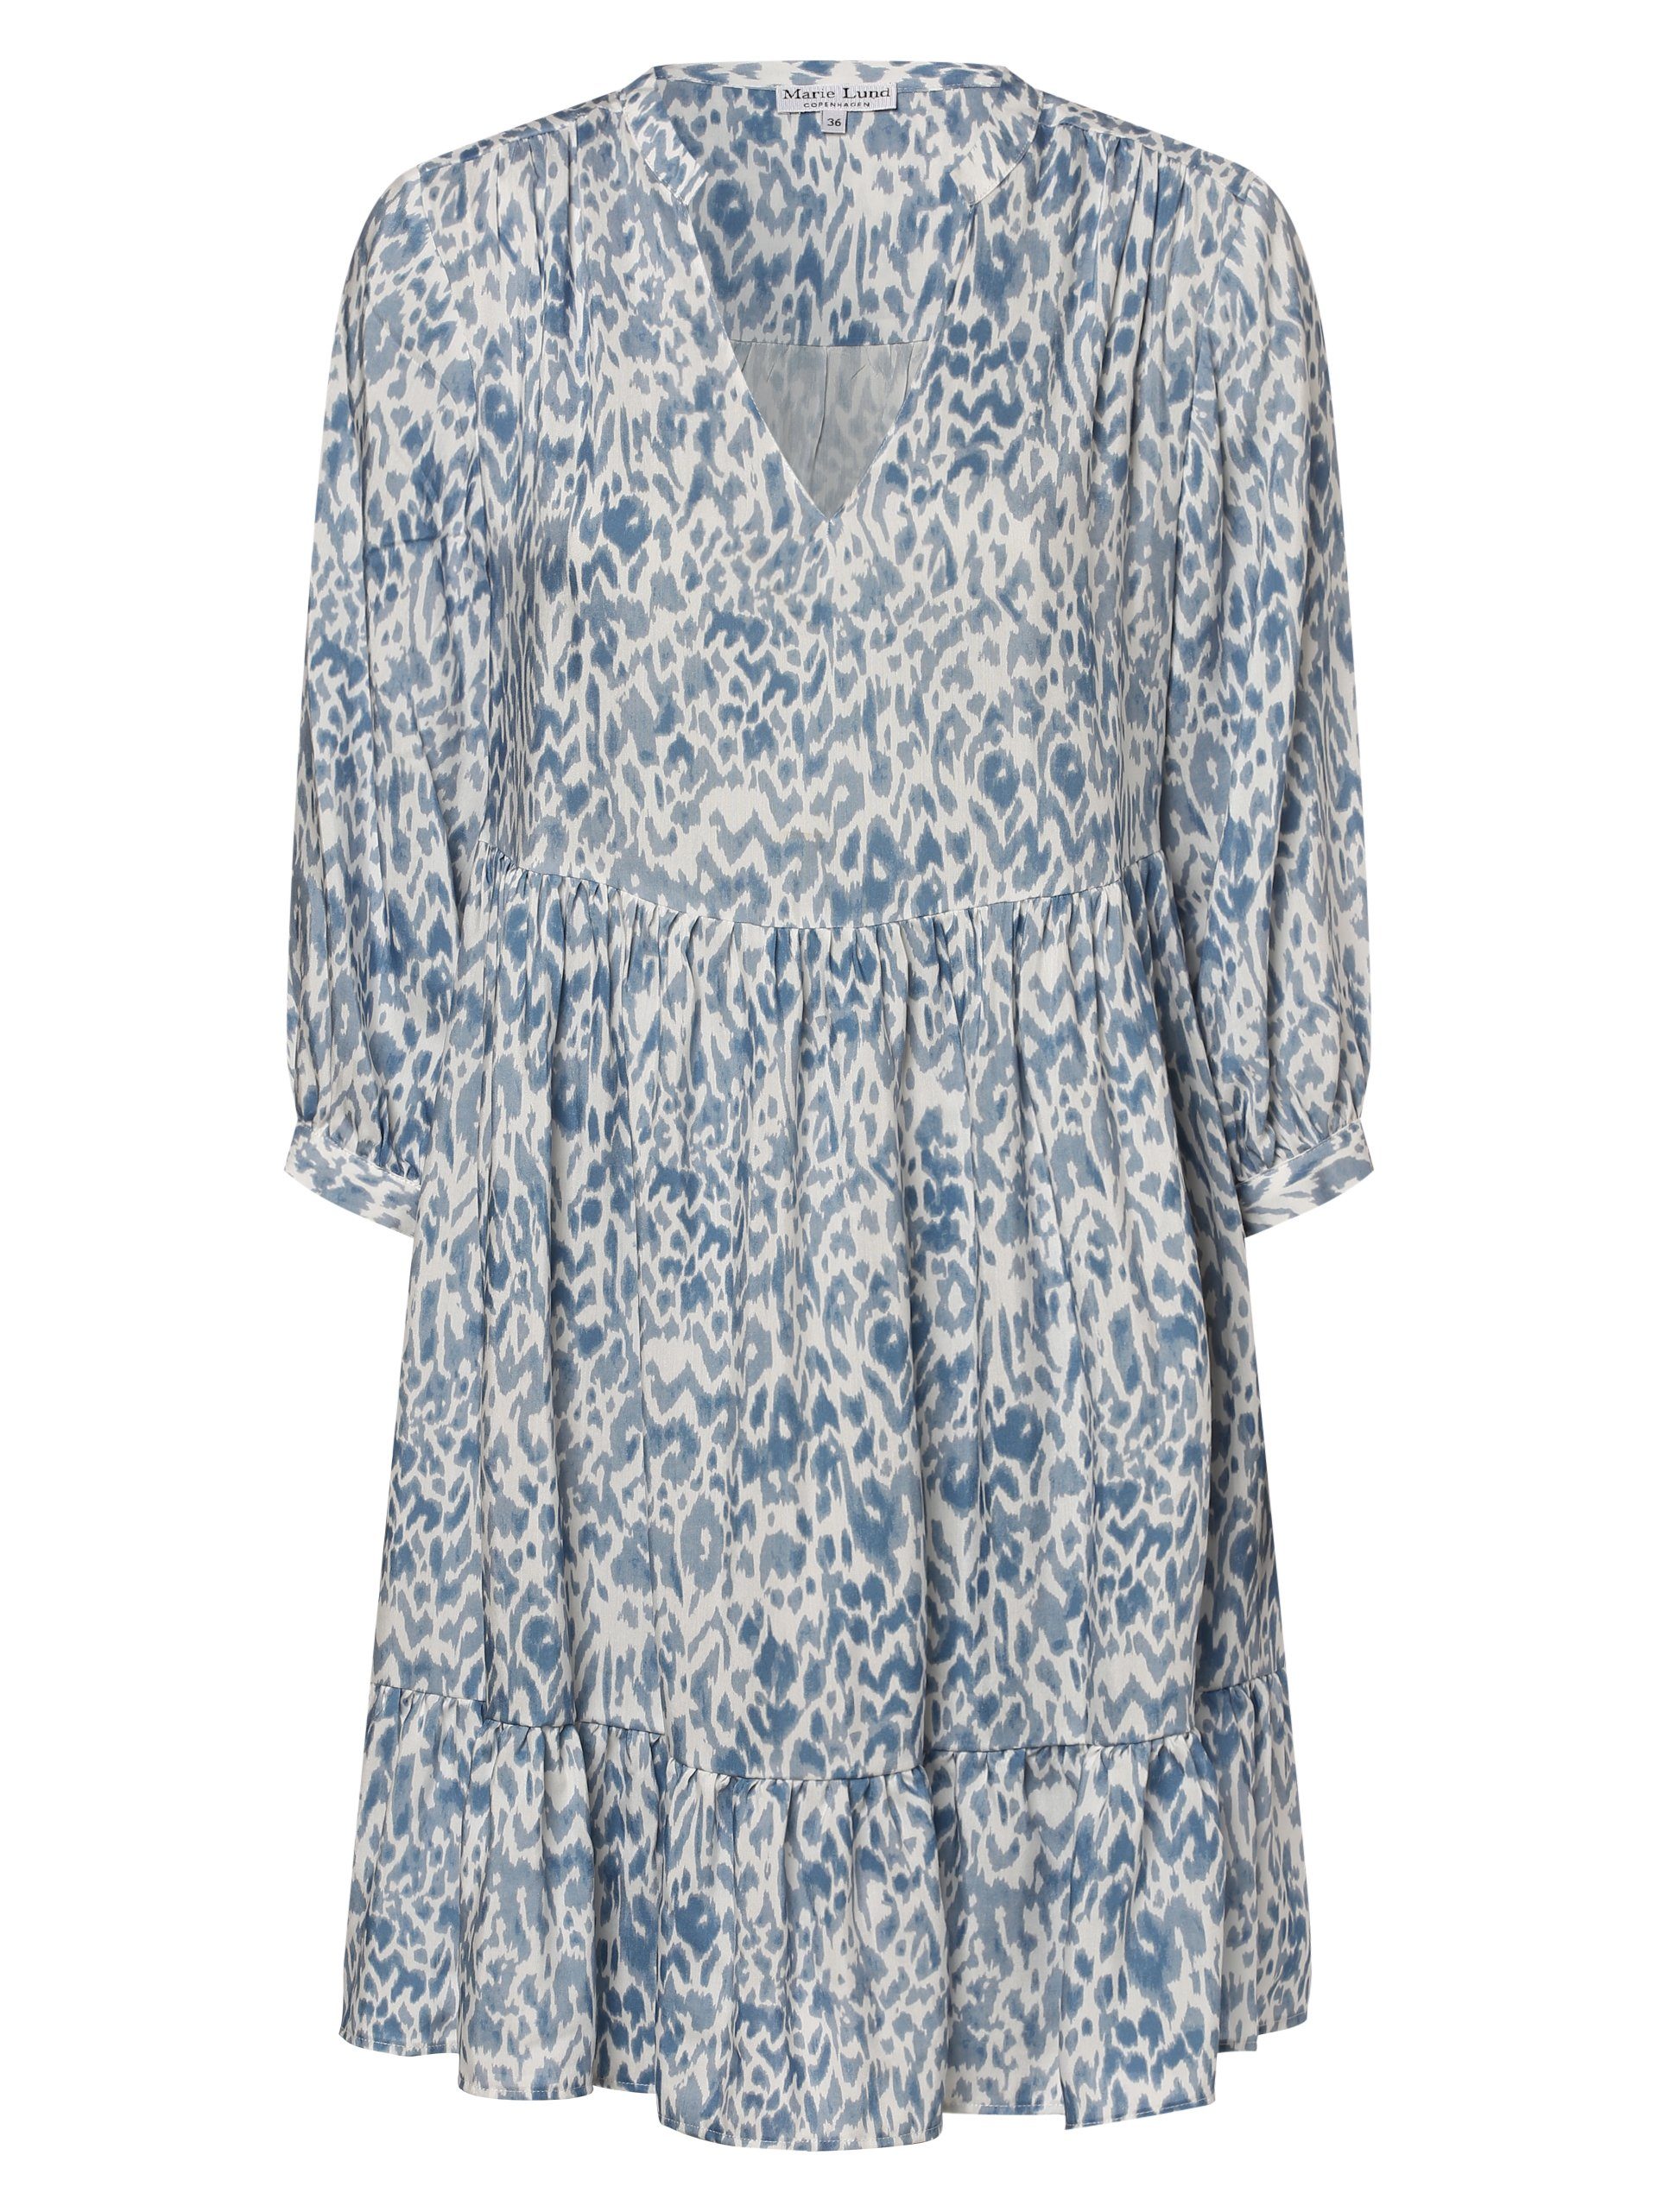 Marie Lund A-Linien-Kleid blau weiß